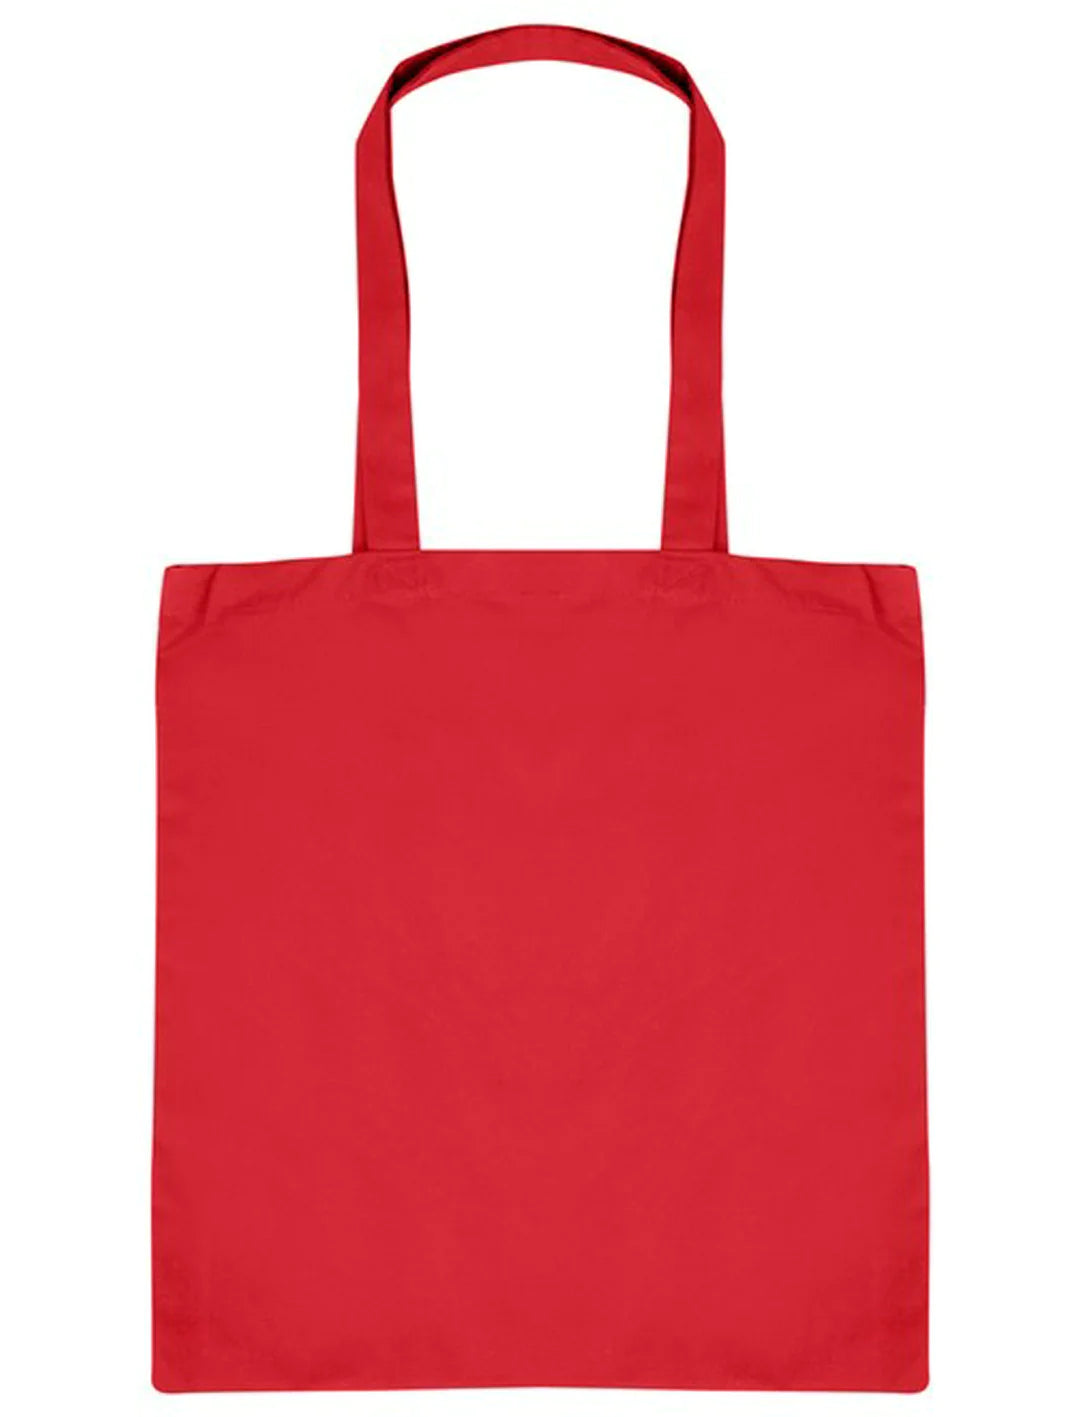 Cotton Shopper Bag Long Handle 155gsm-R1S